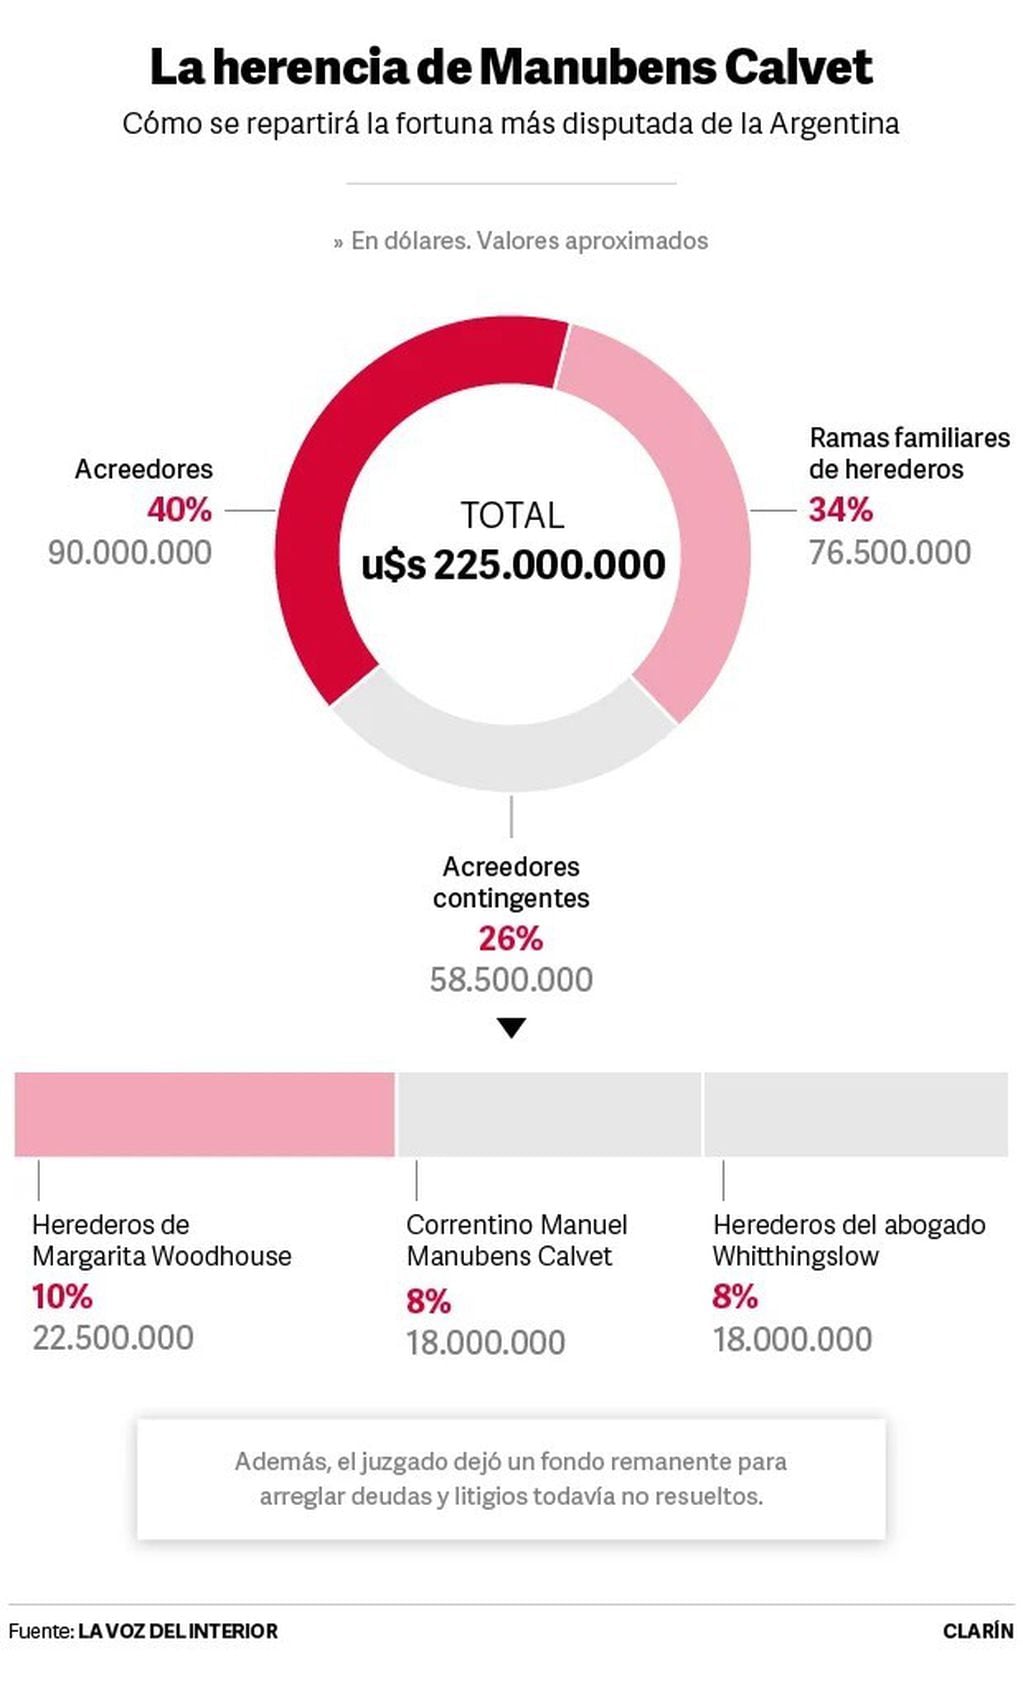 Cómo se reparten los 225 millones de dólares que dejó Manubens Calvet (infografía de La Voz del Interior).